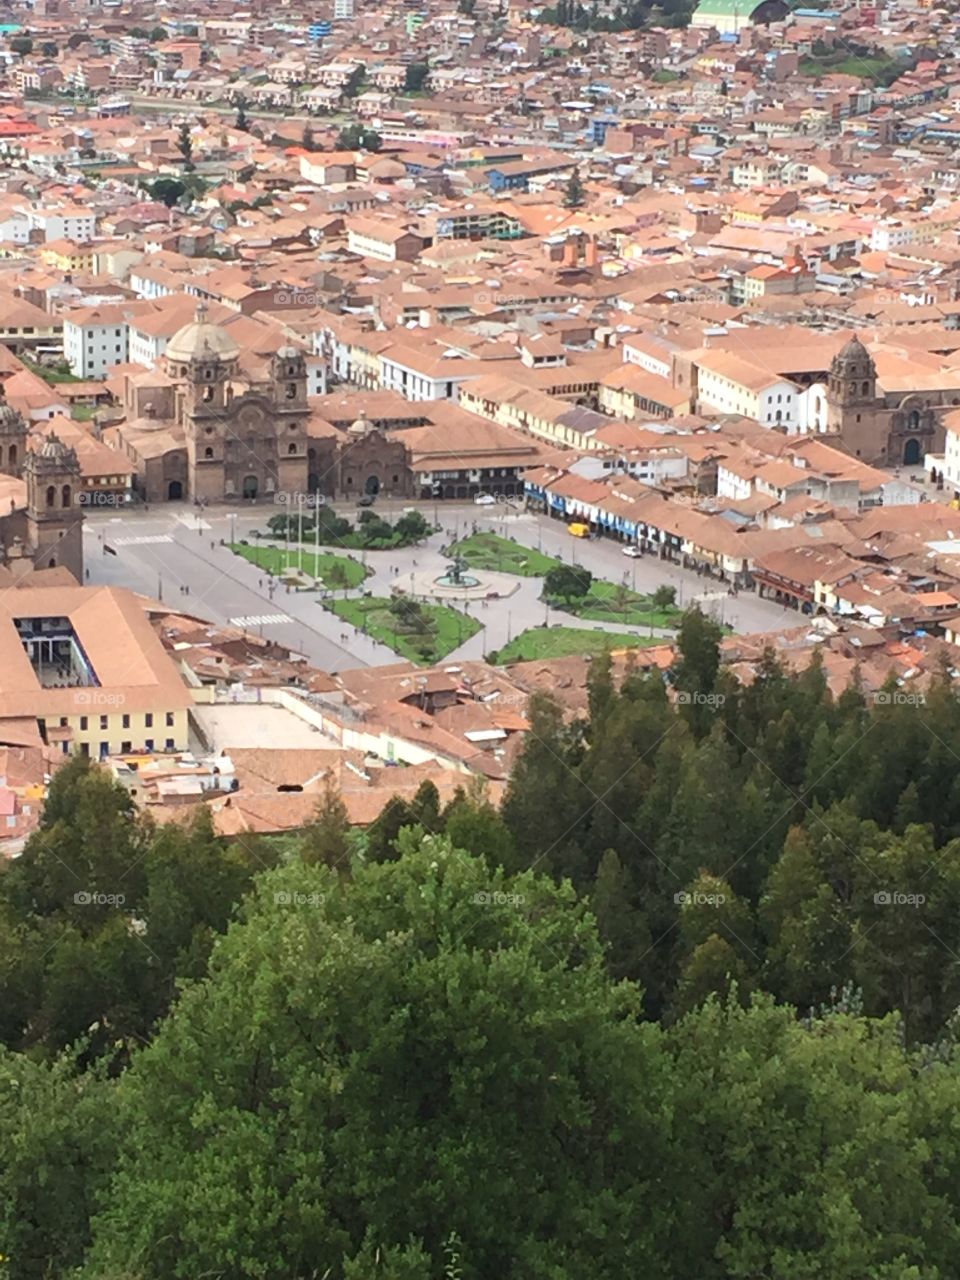 Cusco square